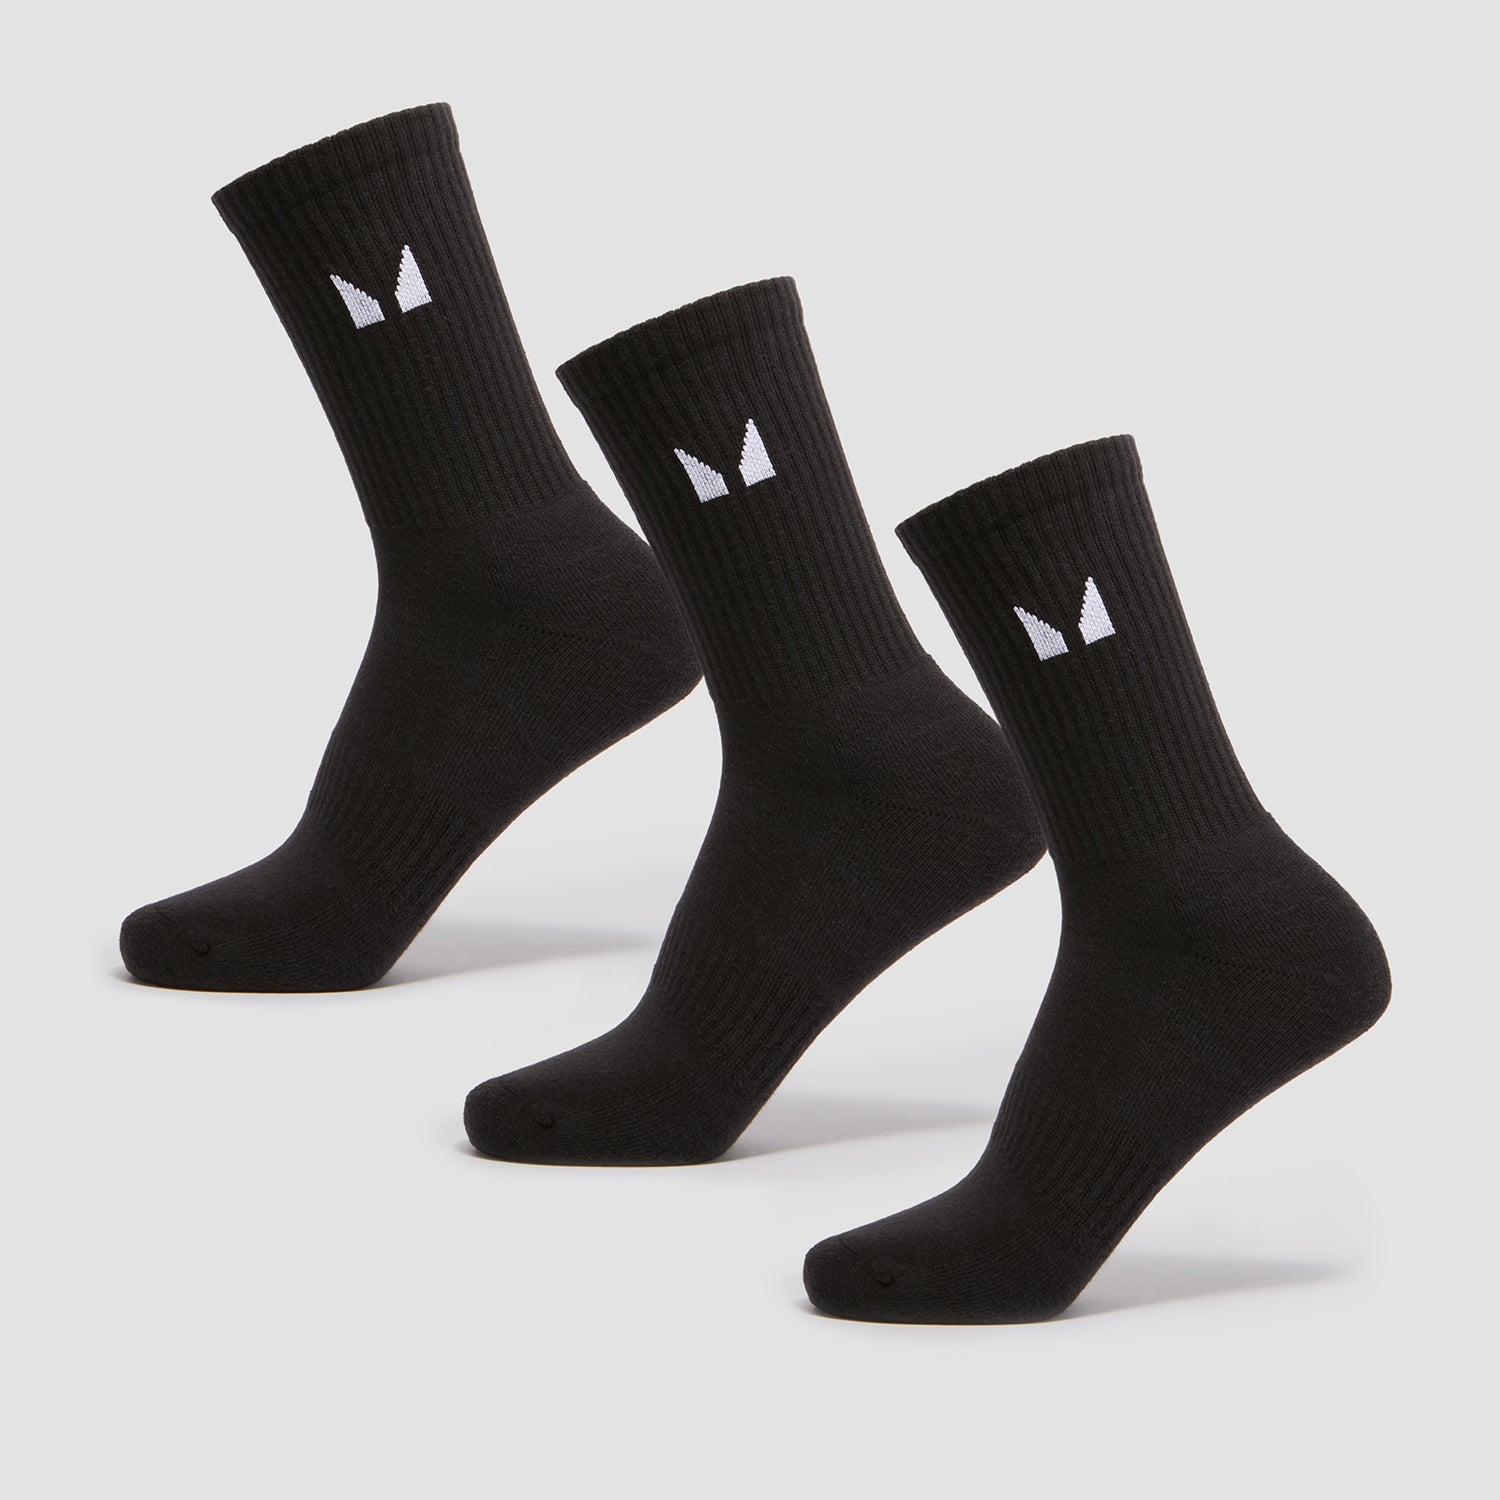 Αθλητικές Κάλτσες MP Unisex (Σετ των 3) - Μαύρο - UK 2-5